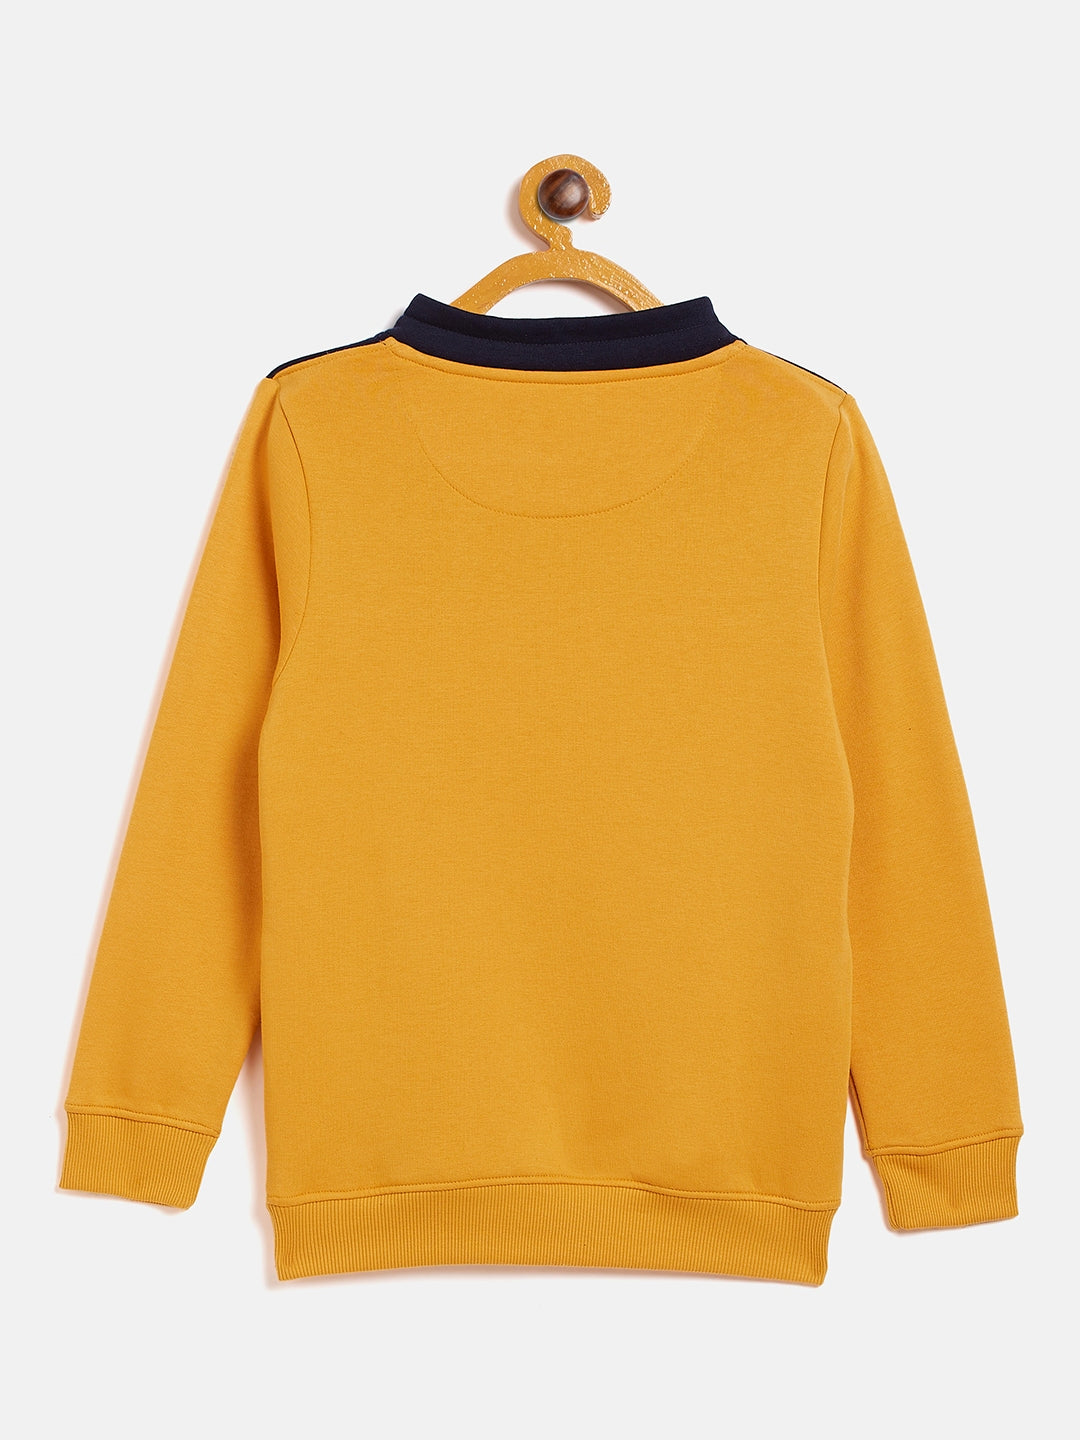 Yellow Colorblocked Sweatshirt - Boys Sweatshirts